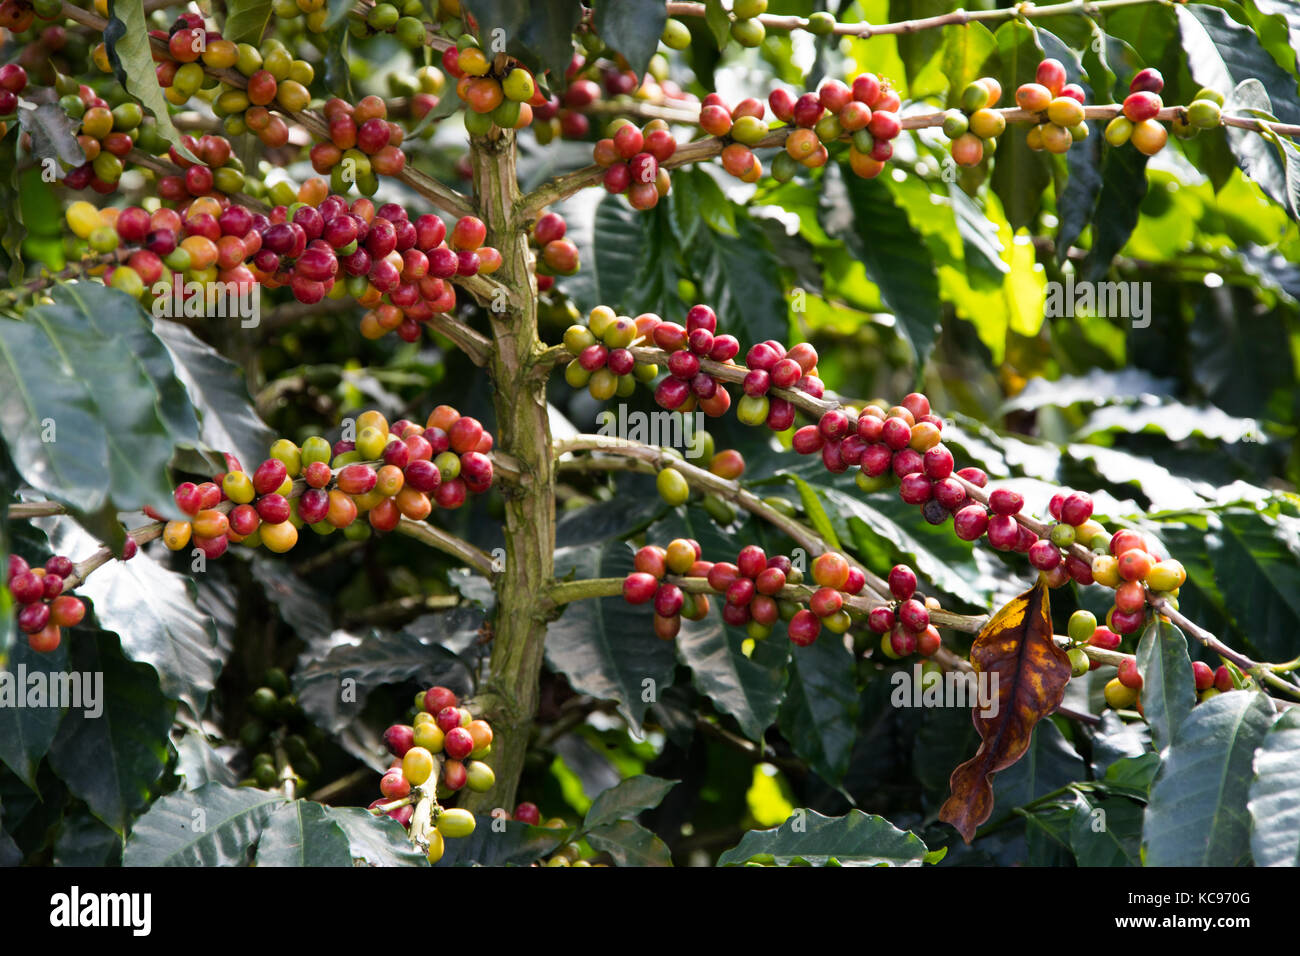 Les cerises de café rouge mûr, ferme de café Hacienda Venecia, Manizales, Colombie Banque D'Images